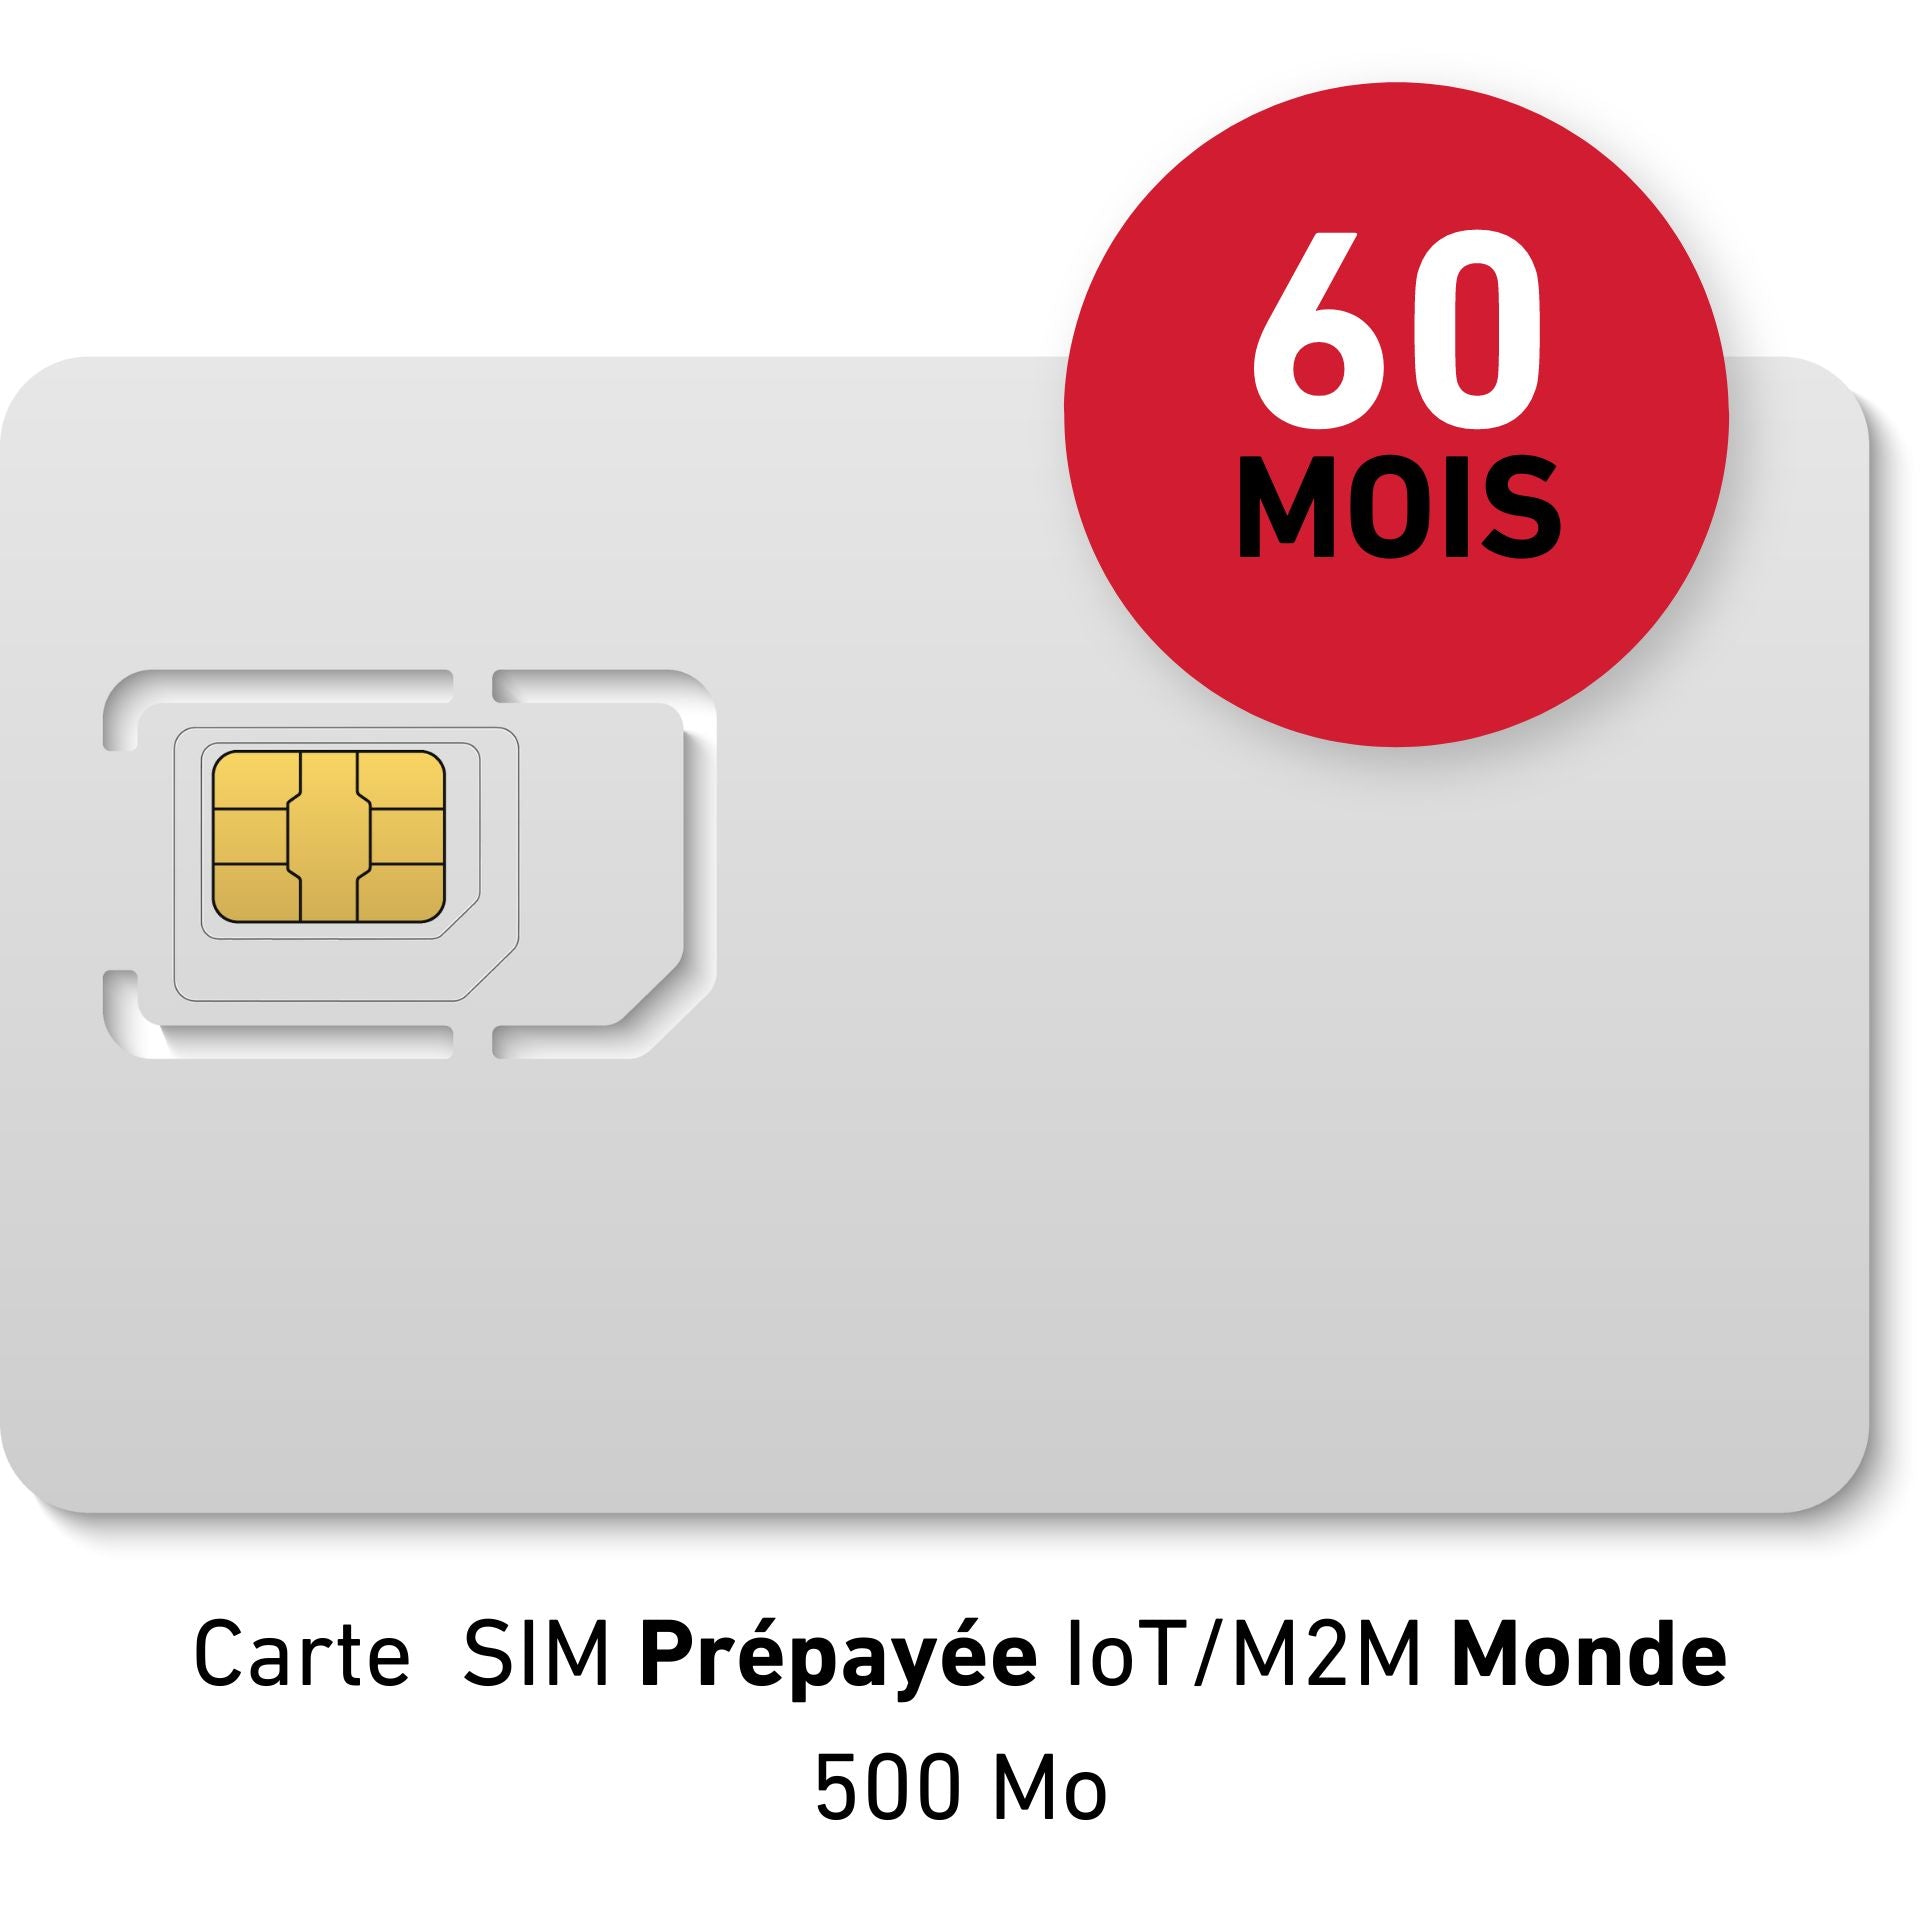 Carte SIM Prépayée IoT/M2M Monde - 50 € HT - 500Mb data - Validité 60 MOIS